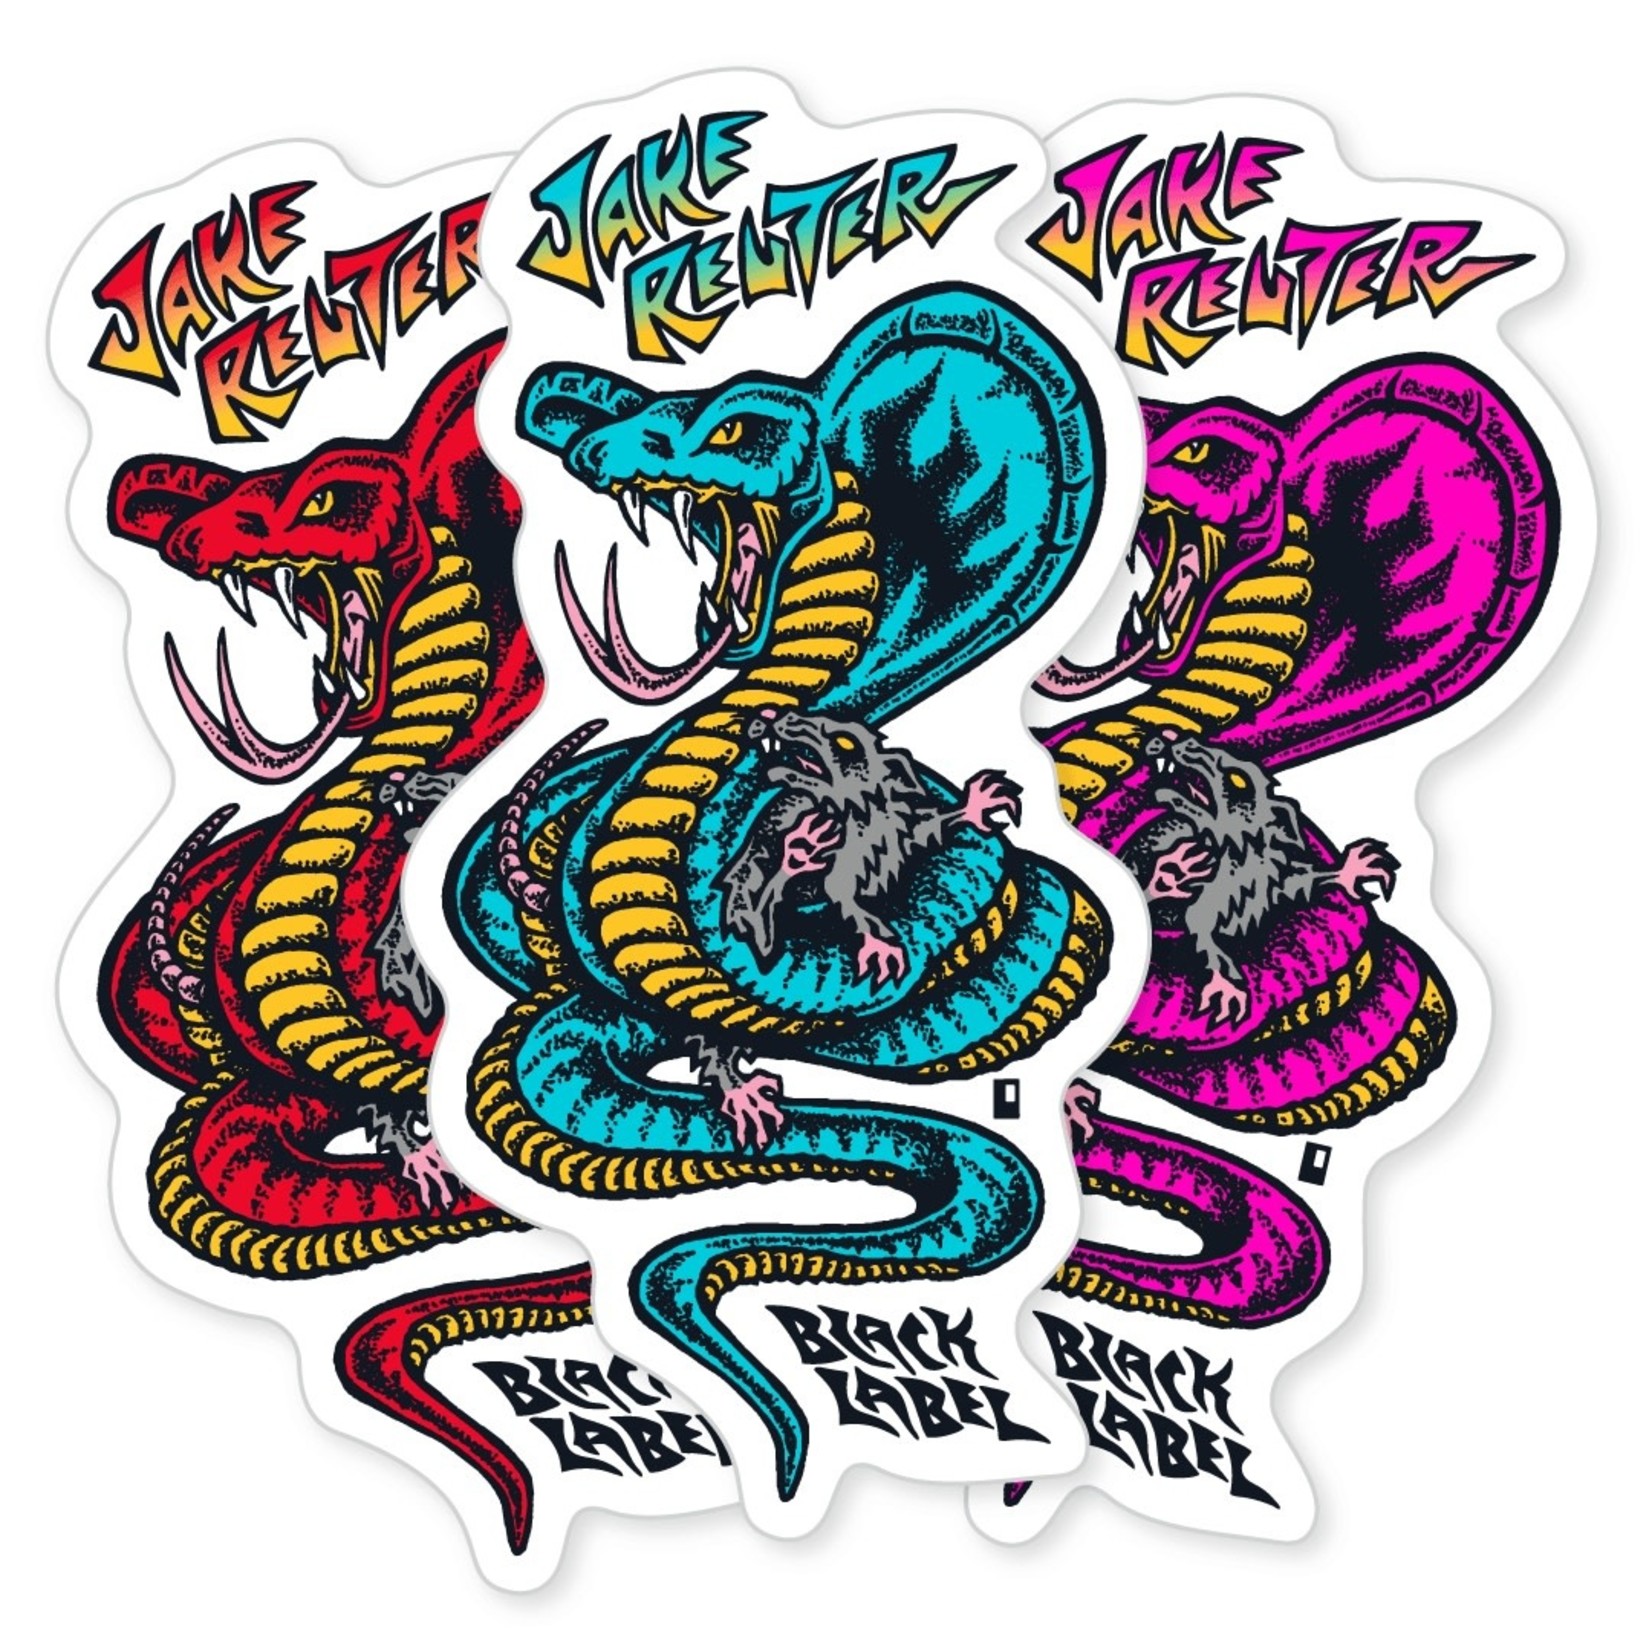 Black Label Black Label Sticker - Jake Reuter Snake & Rat